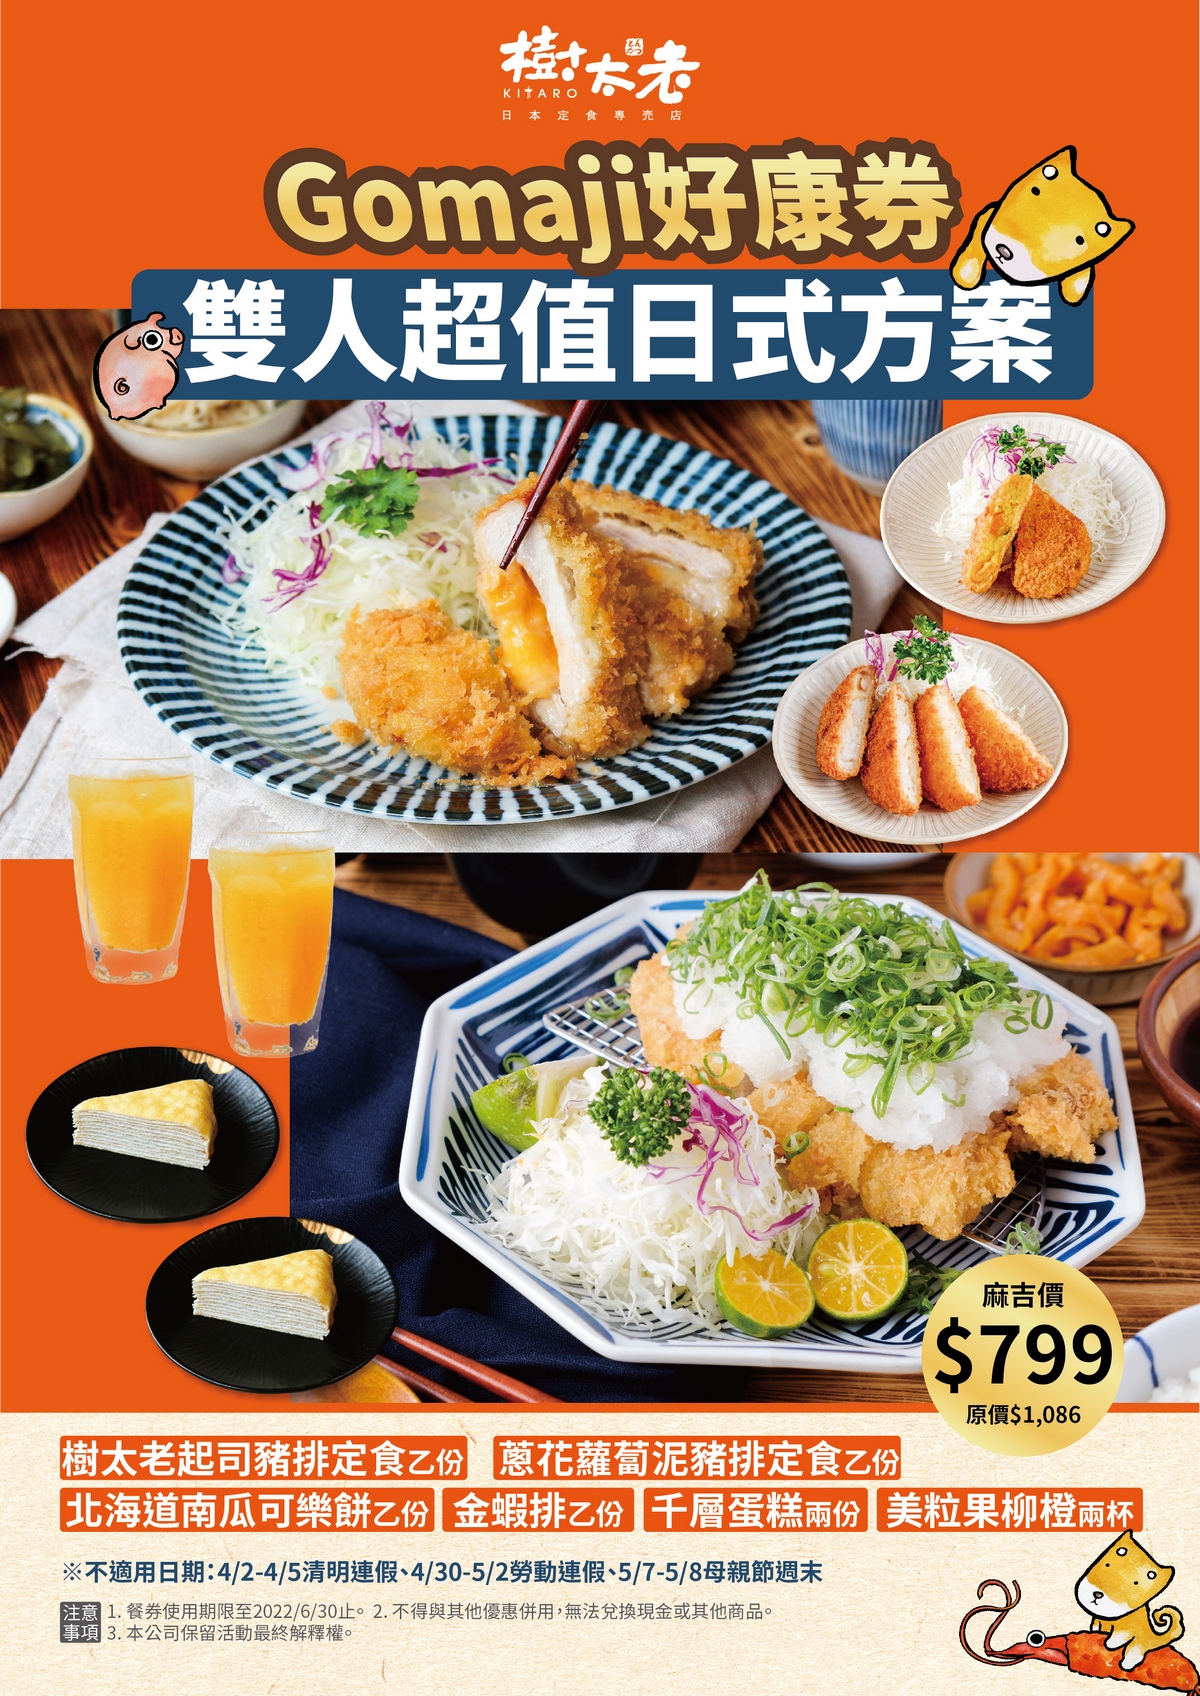 【期間限定】Gomaji雙人超值日式定食套餐$799